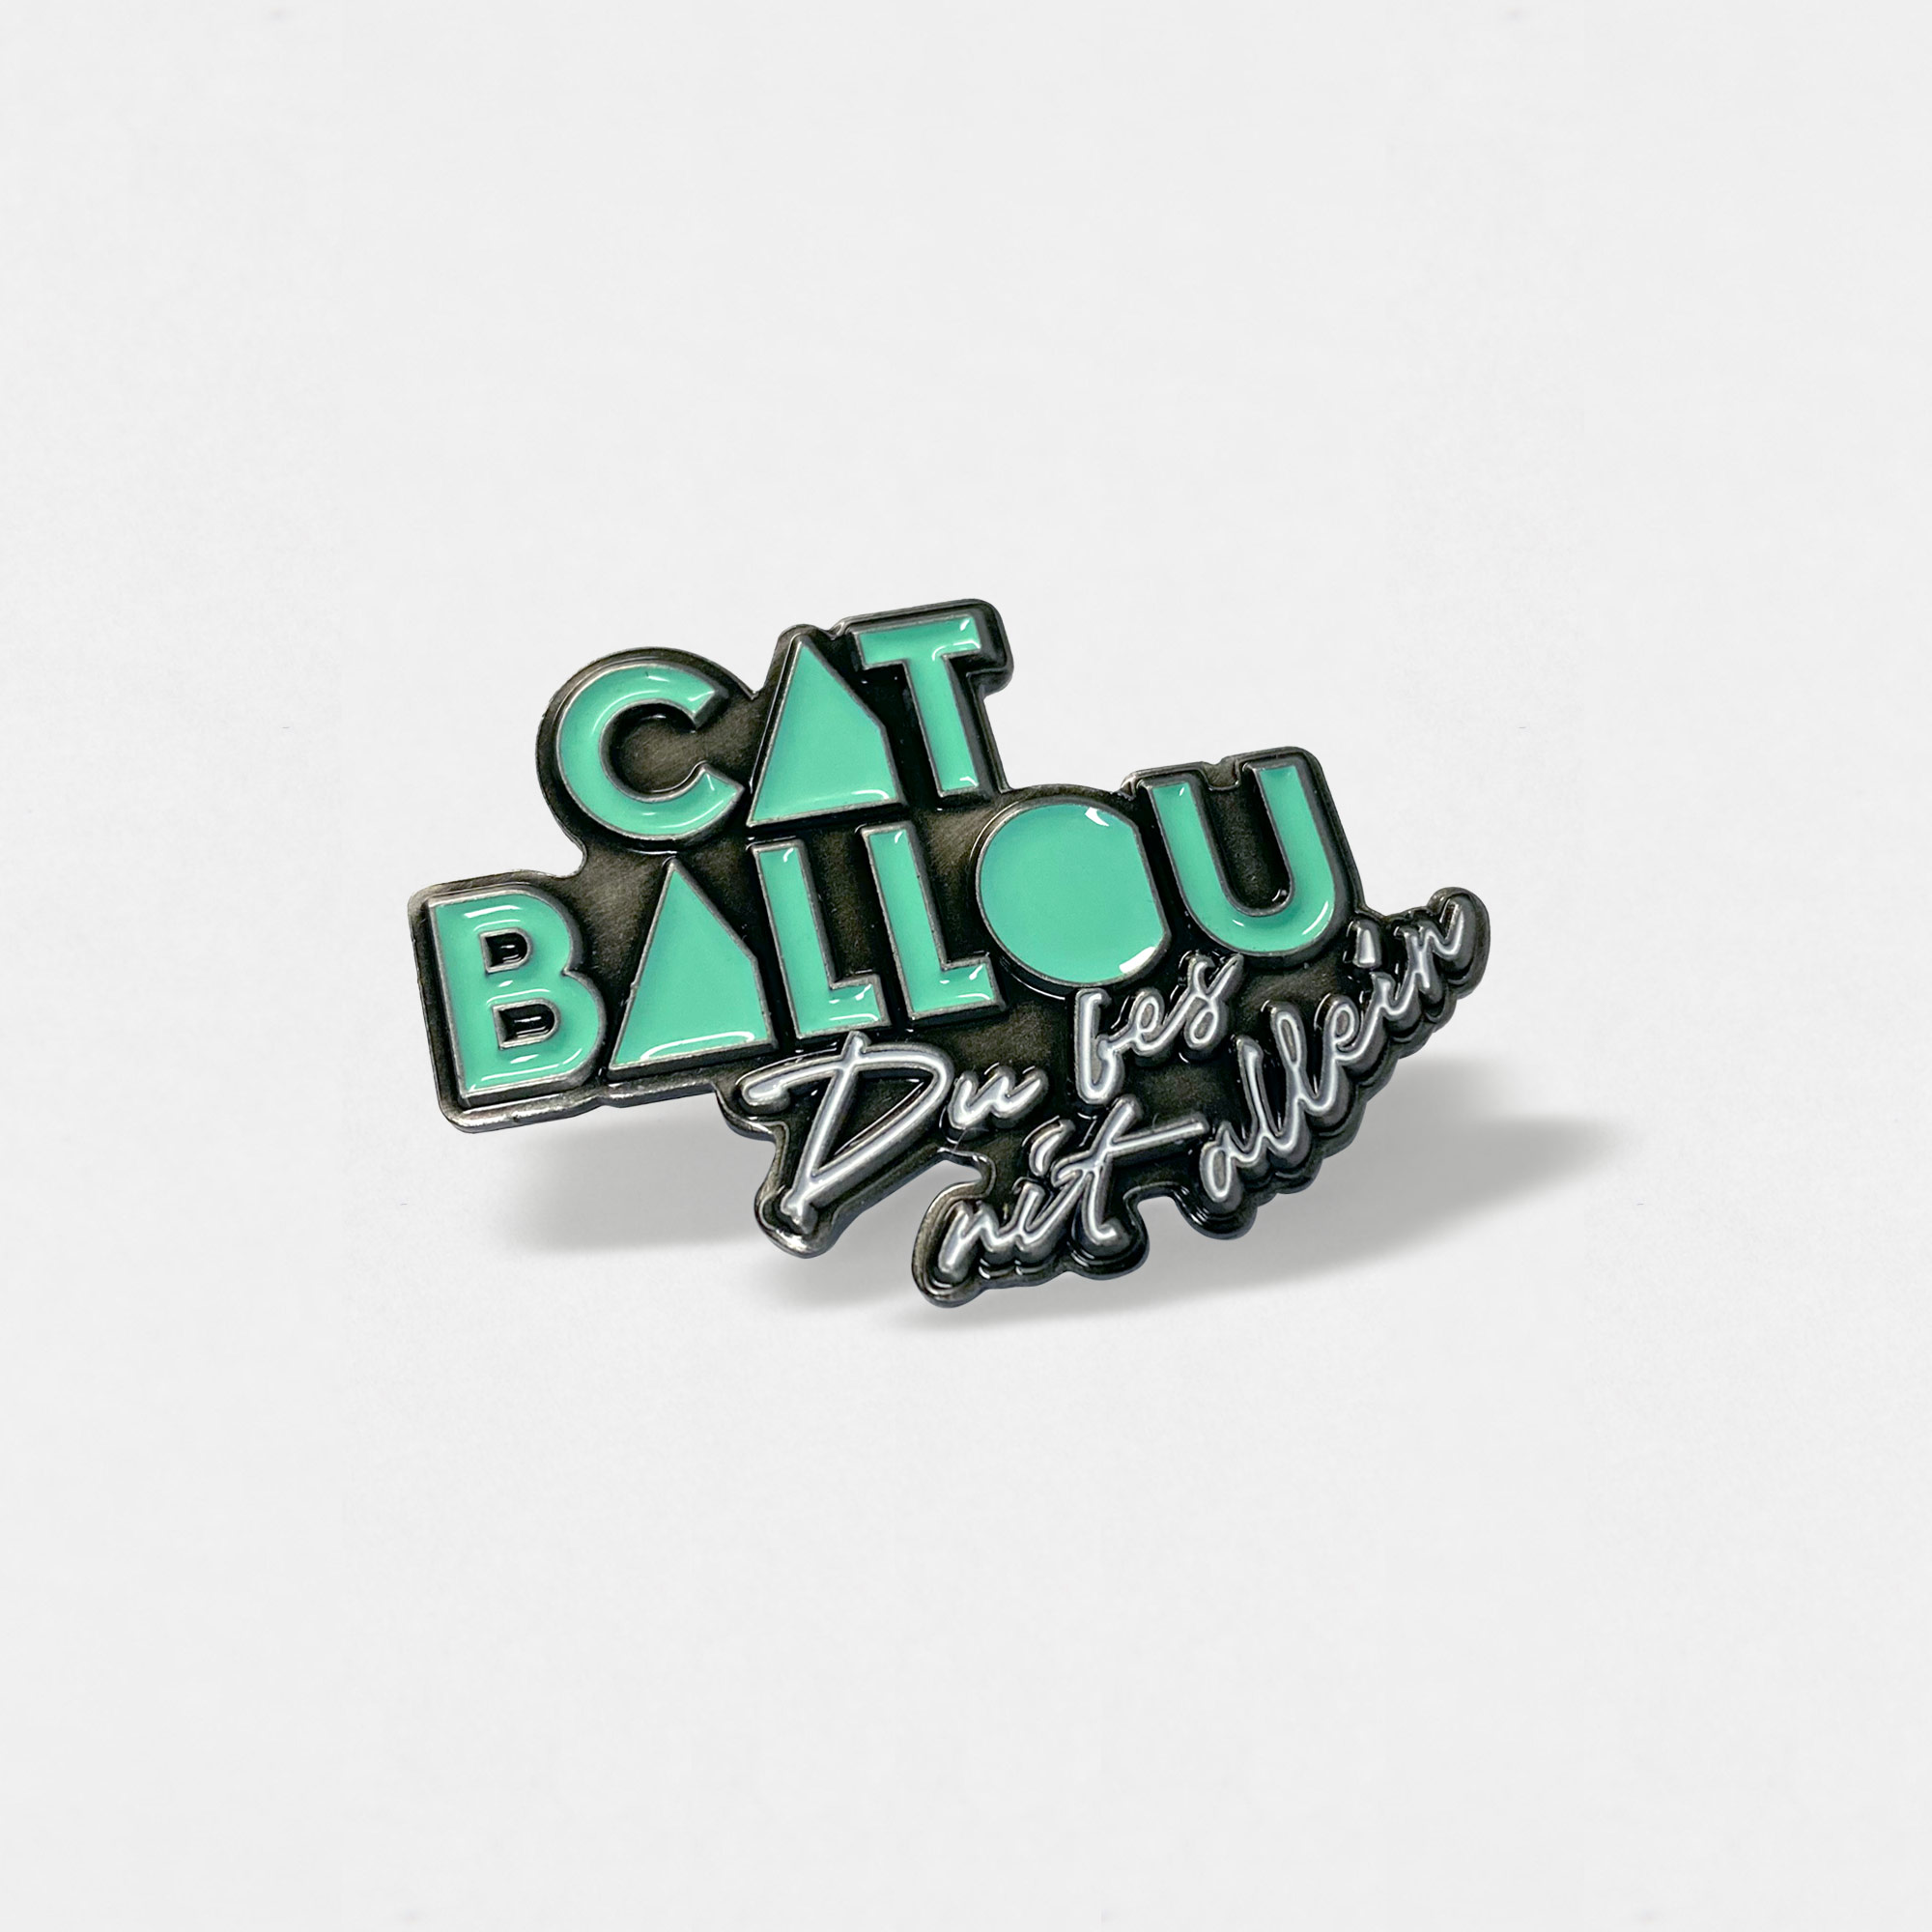 Cat Ballou Pin Du bes nit allein (Shop Art-No. a0033) | Cat Ballou